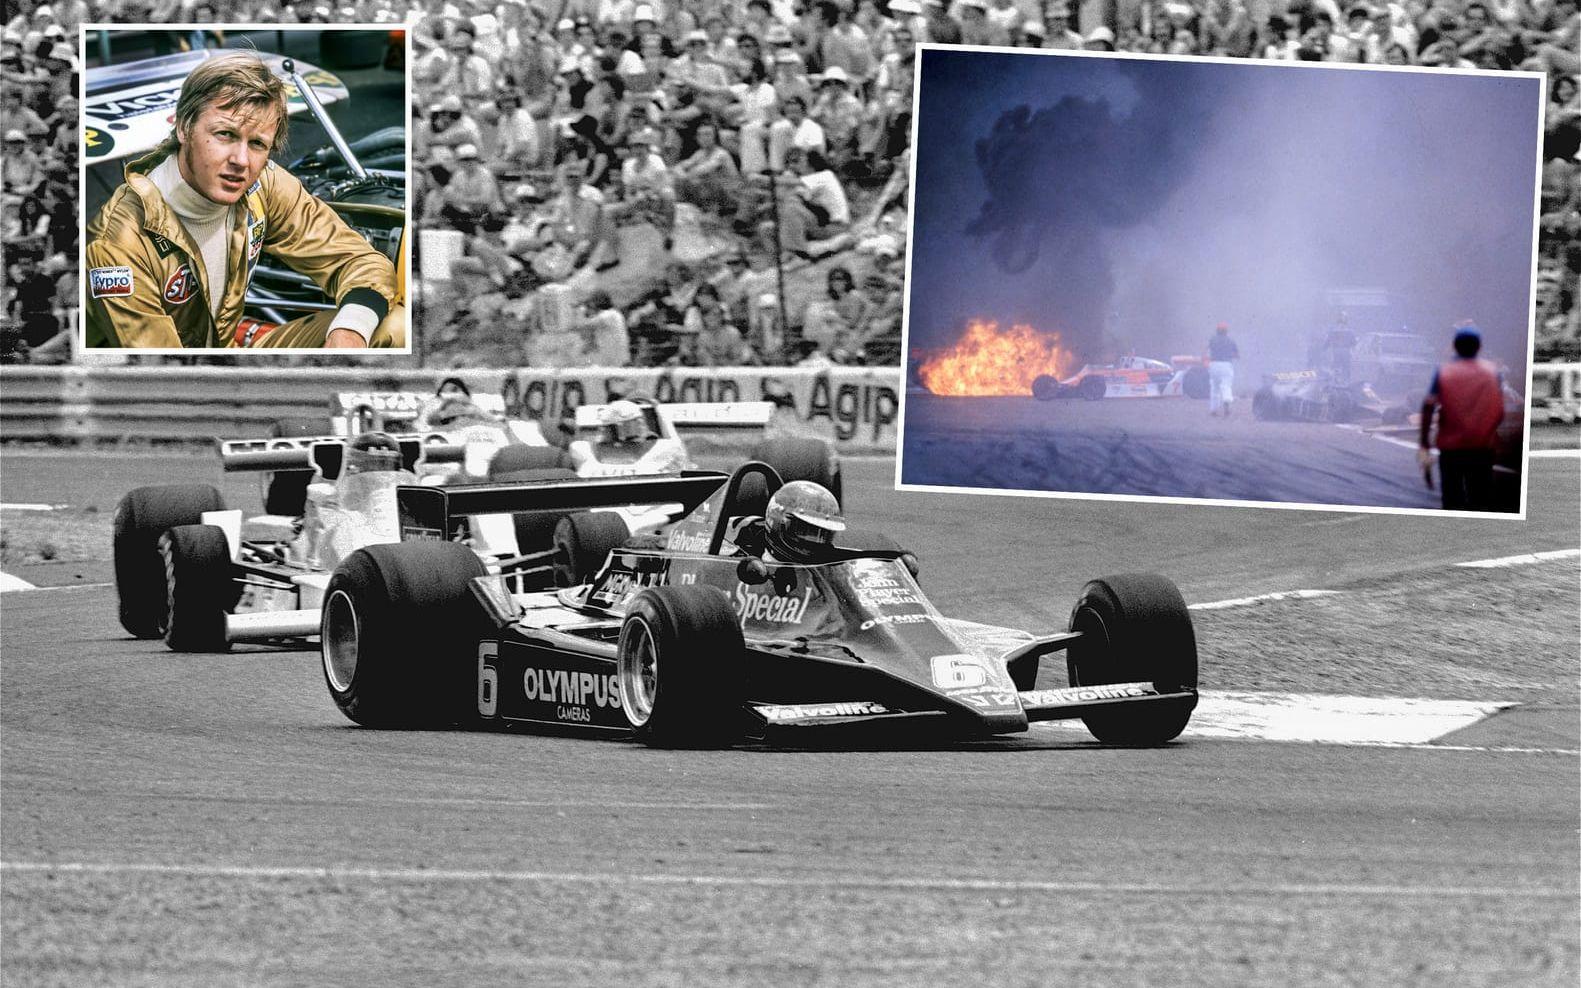 Den 10 september 1978 var Peterson inblandad i en olycka på Monza i Italien. Han skadades svårt och fick flera frakturer. Dagen efter kraschen <strong>avled han på sjukhus efter en operation.</strong> Peterson blev 34 år gammal. Foto: TT